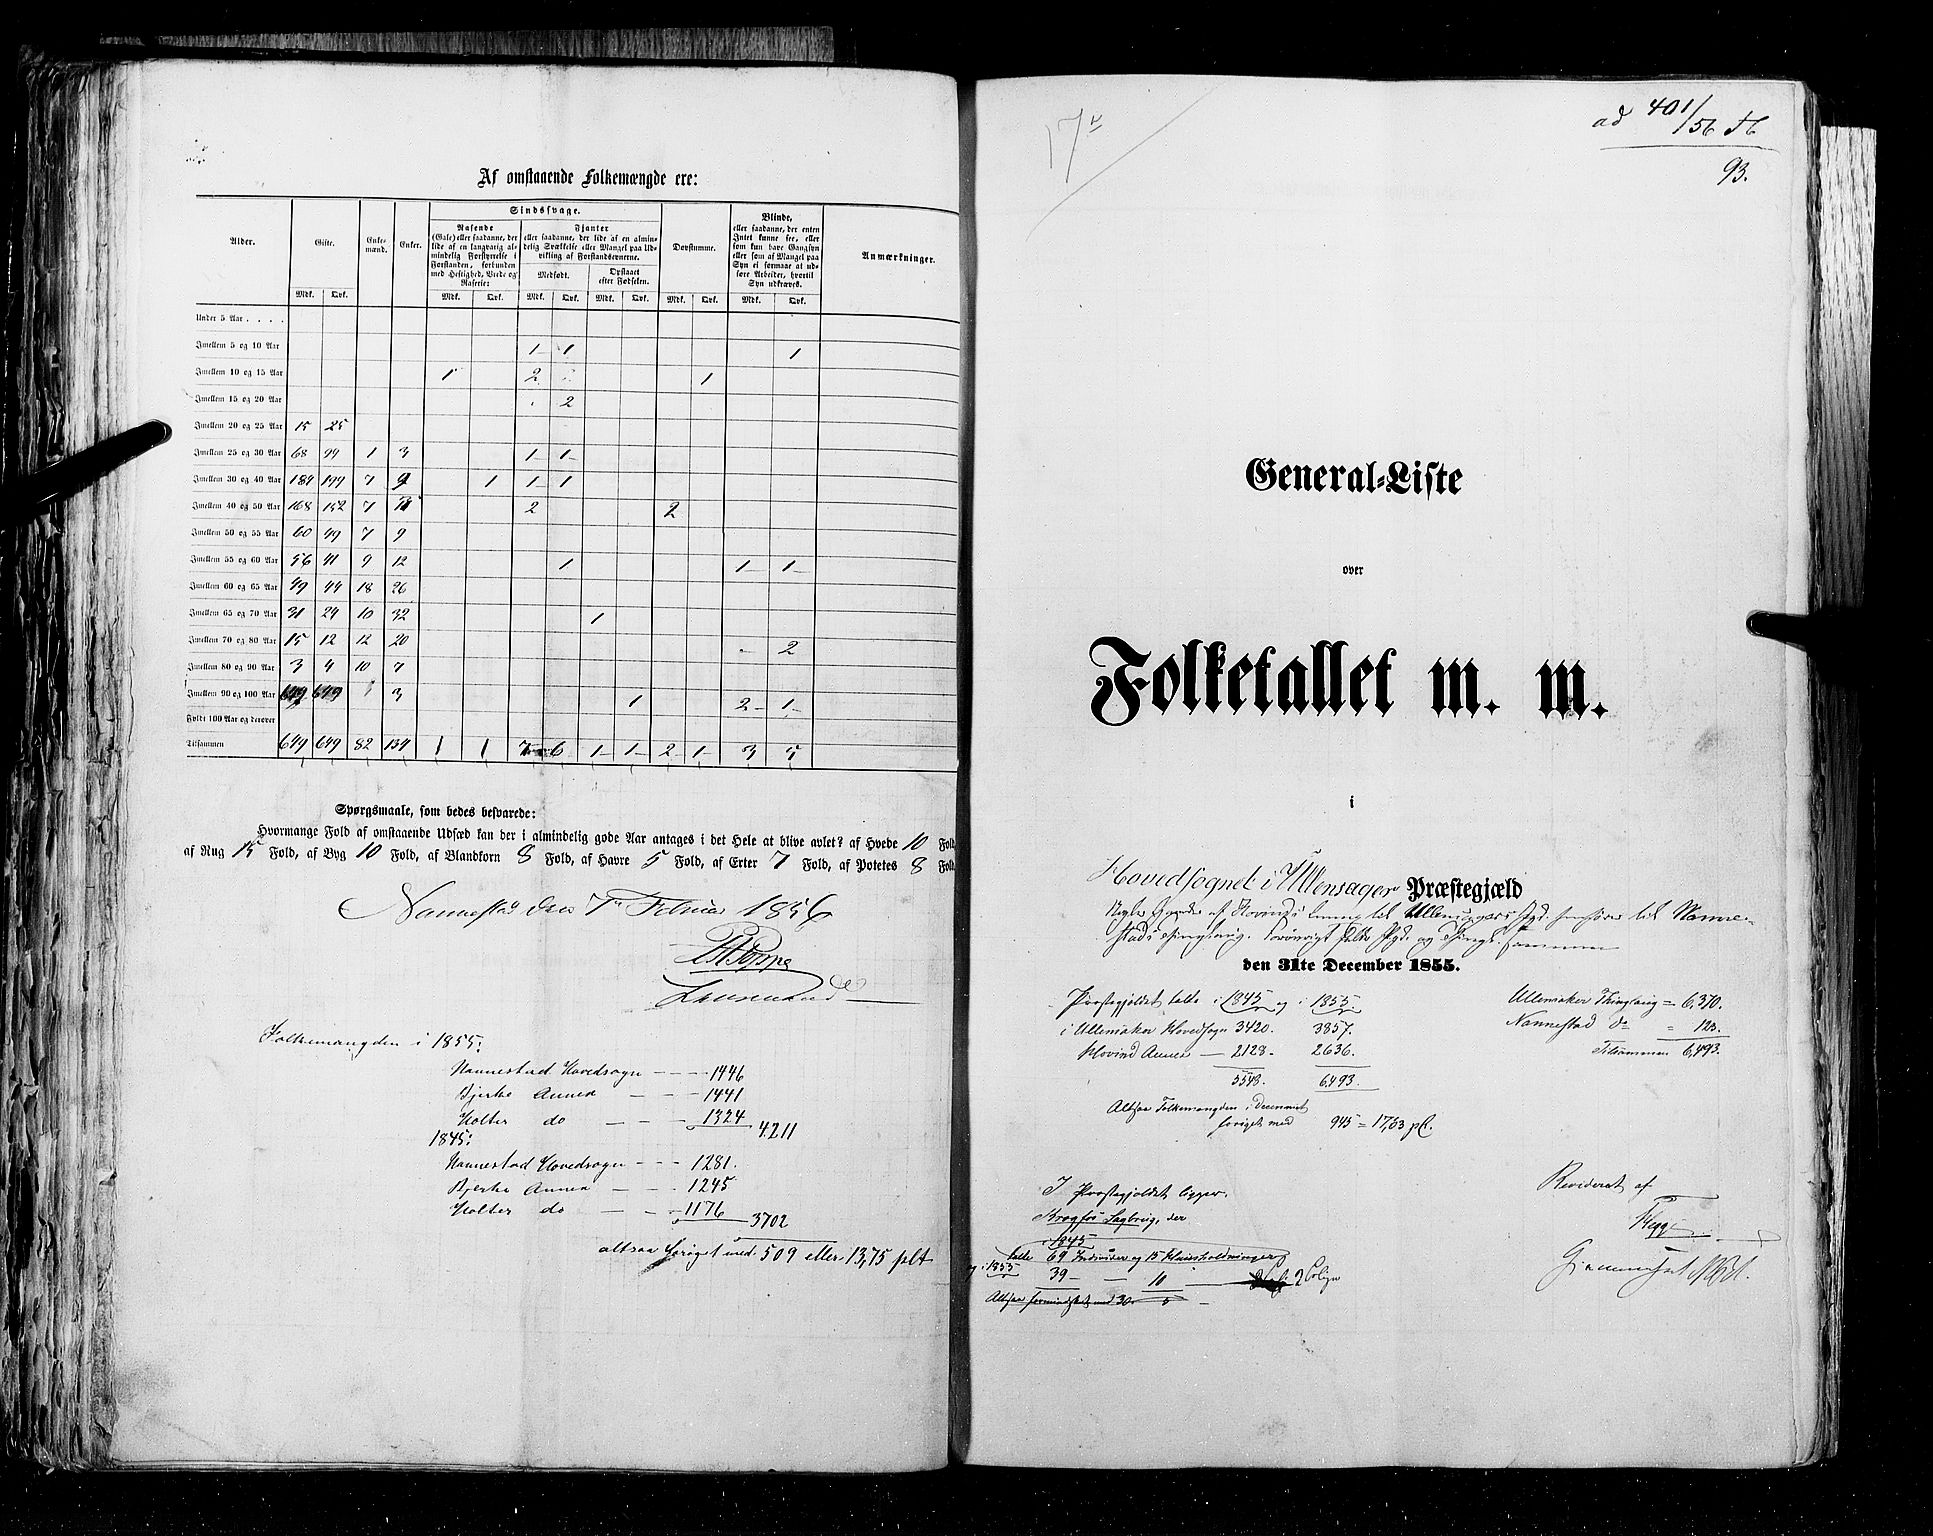 RA, Folketellingen 1855, bind 1: Akershus amt, Smålenenes amt og Hedemarken amt, 1855, s. 93